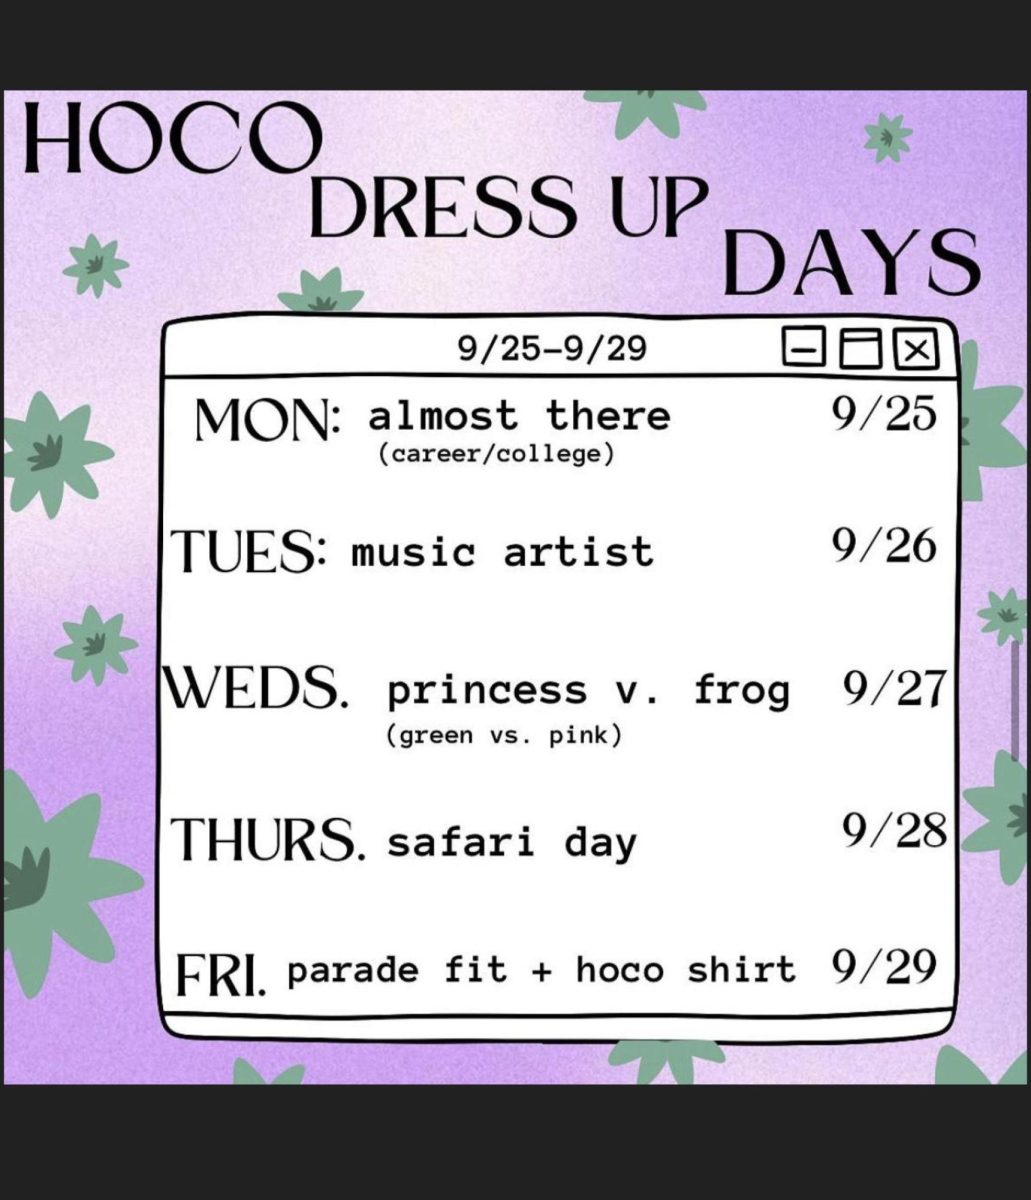 HOCO Dress Days & Event Calendar